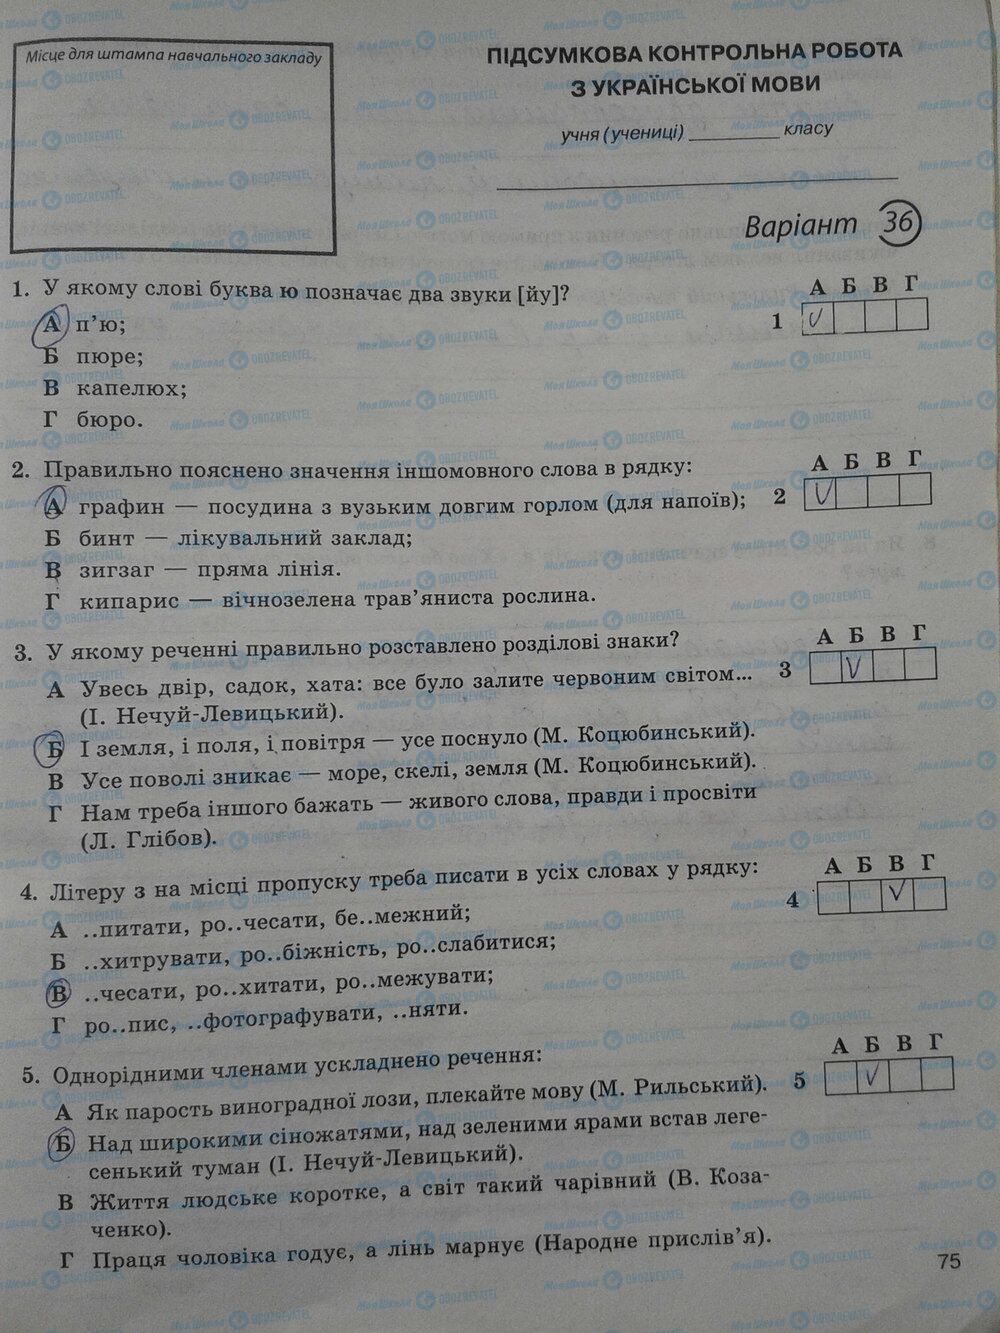 ГДЗ Укр мова 5 класс страница стр. 75